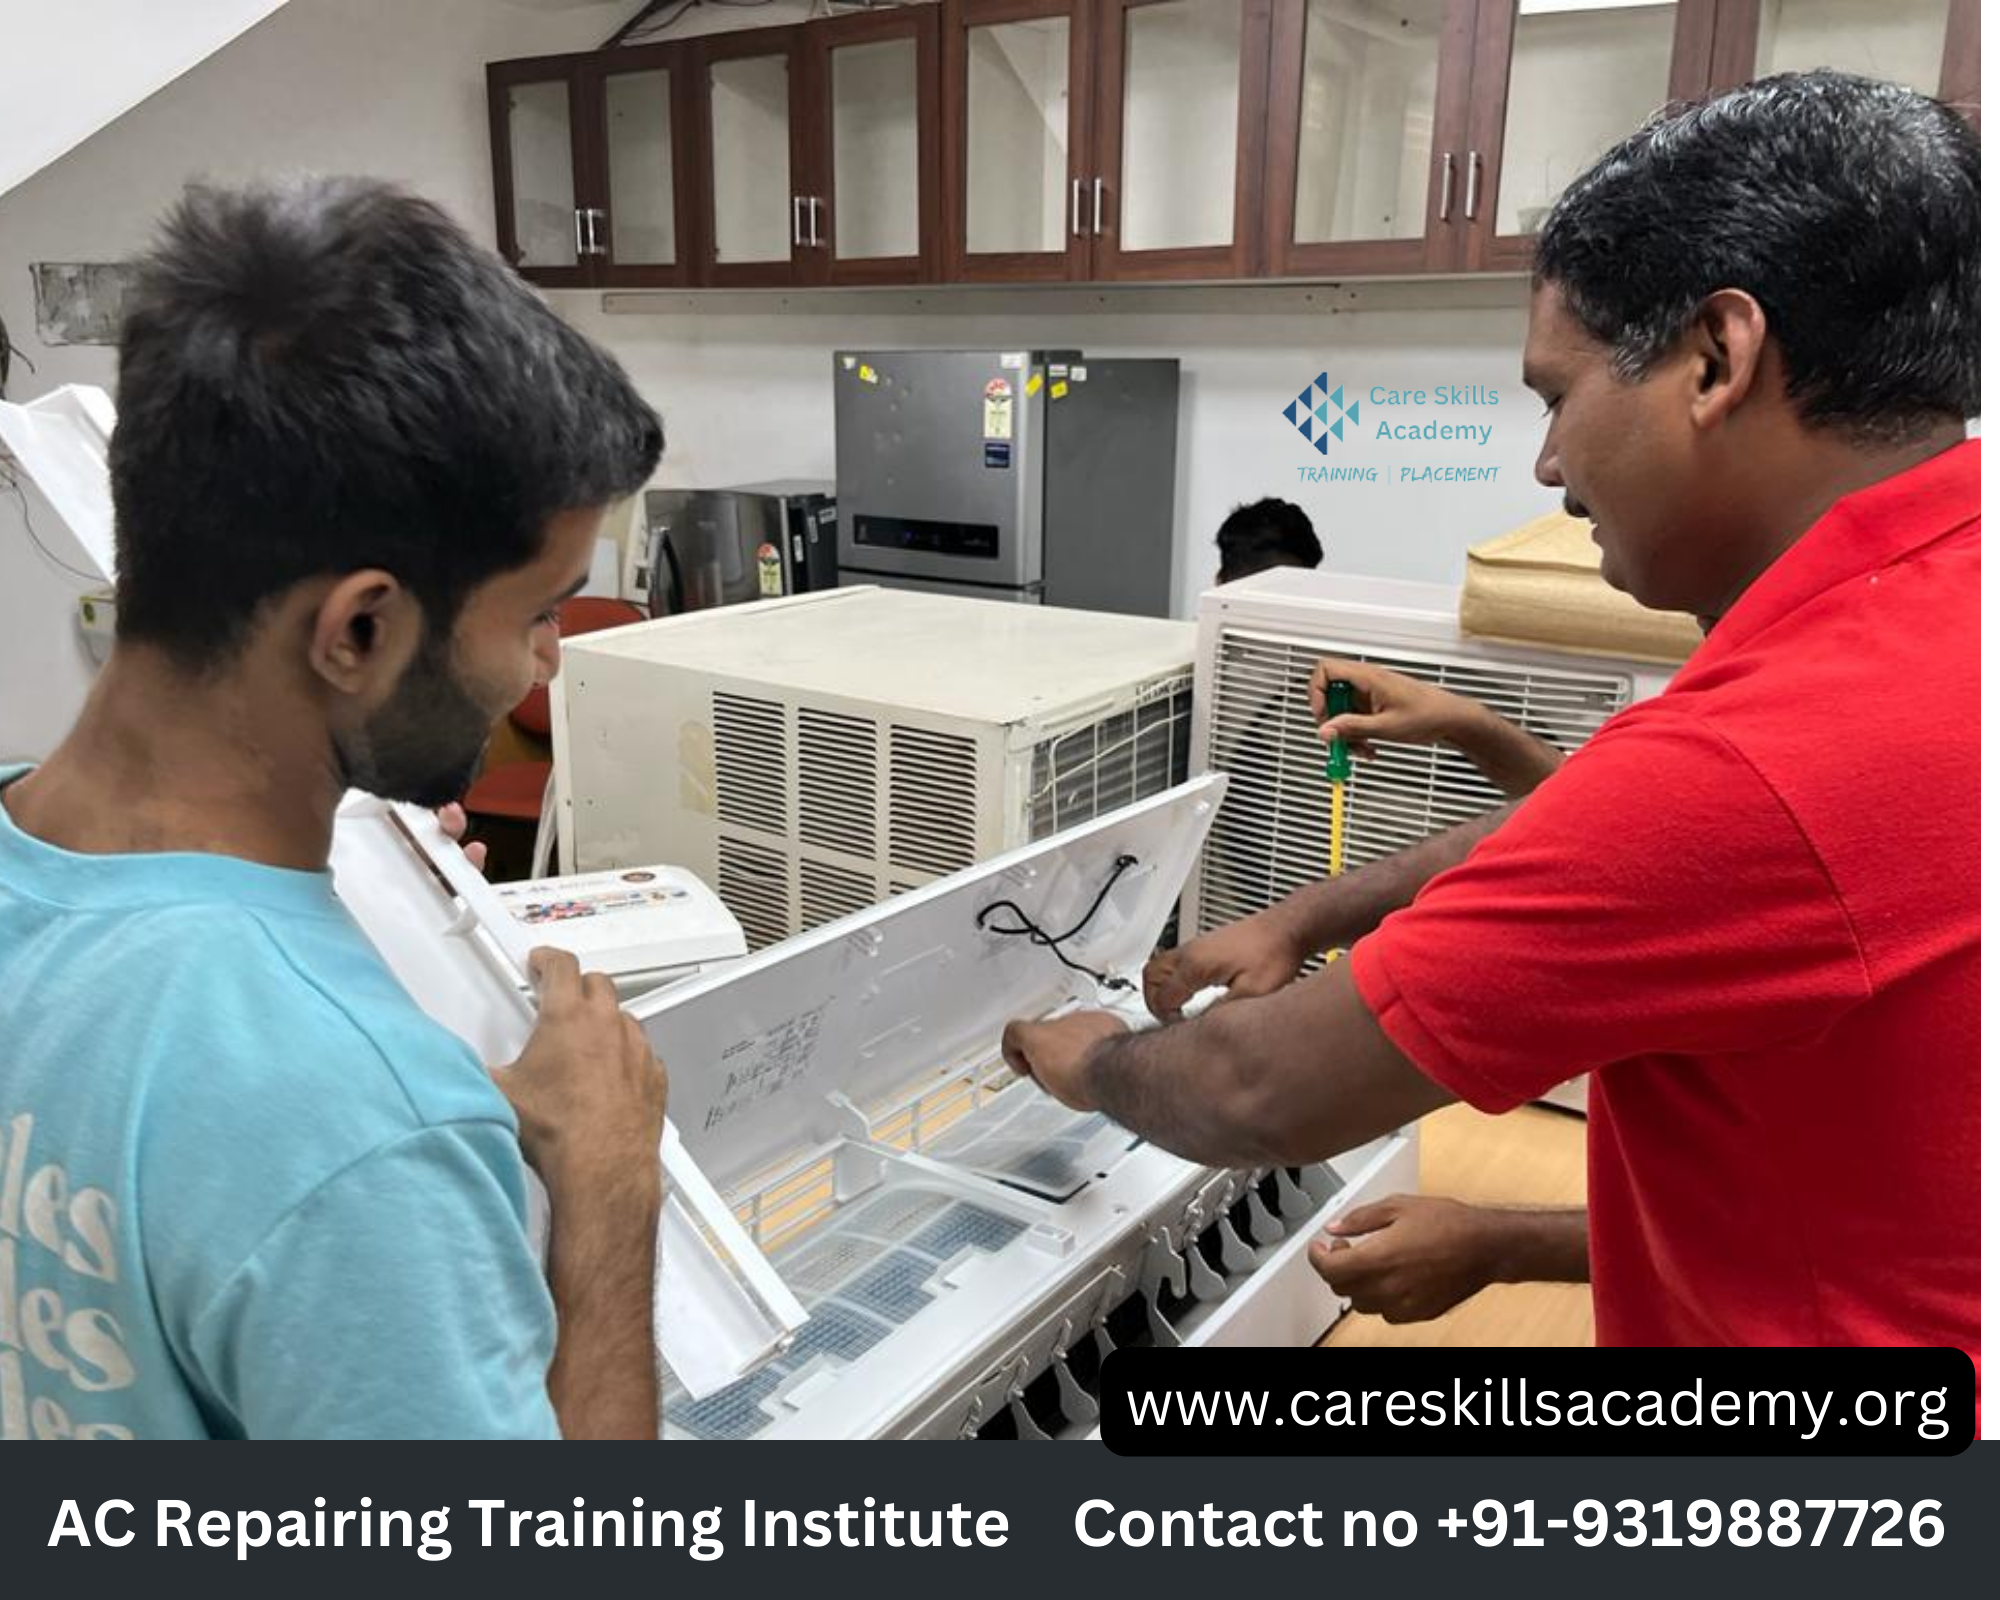 AC Repairing Course in Delhi | AC Mechanic Training Institute Course in Delhi